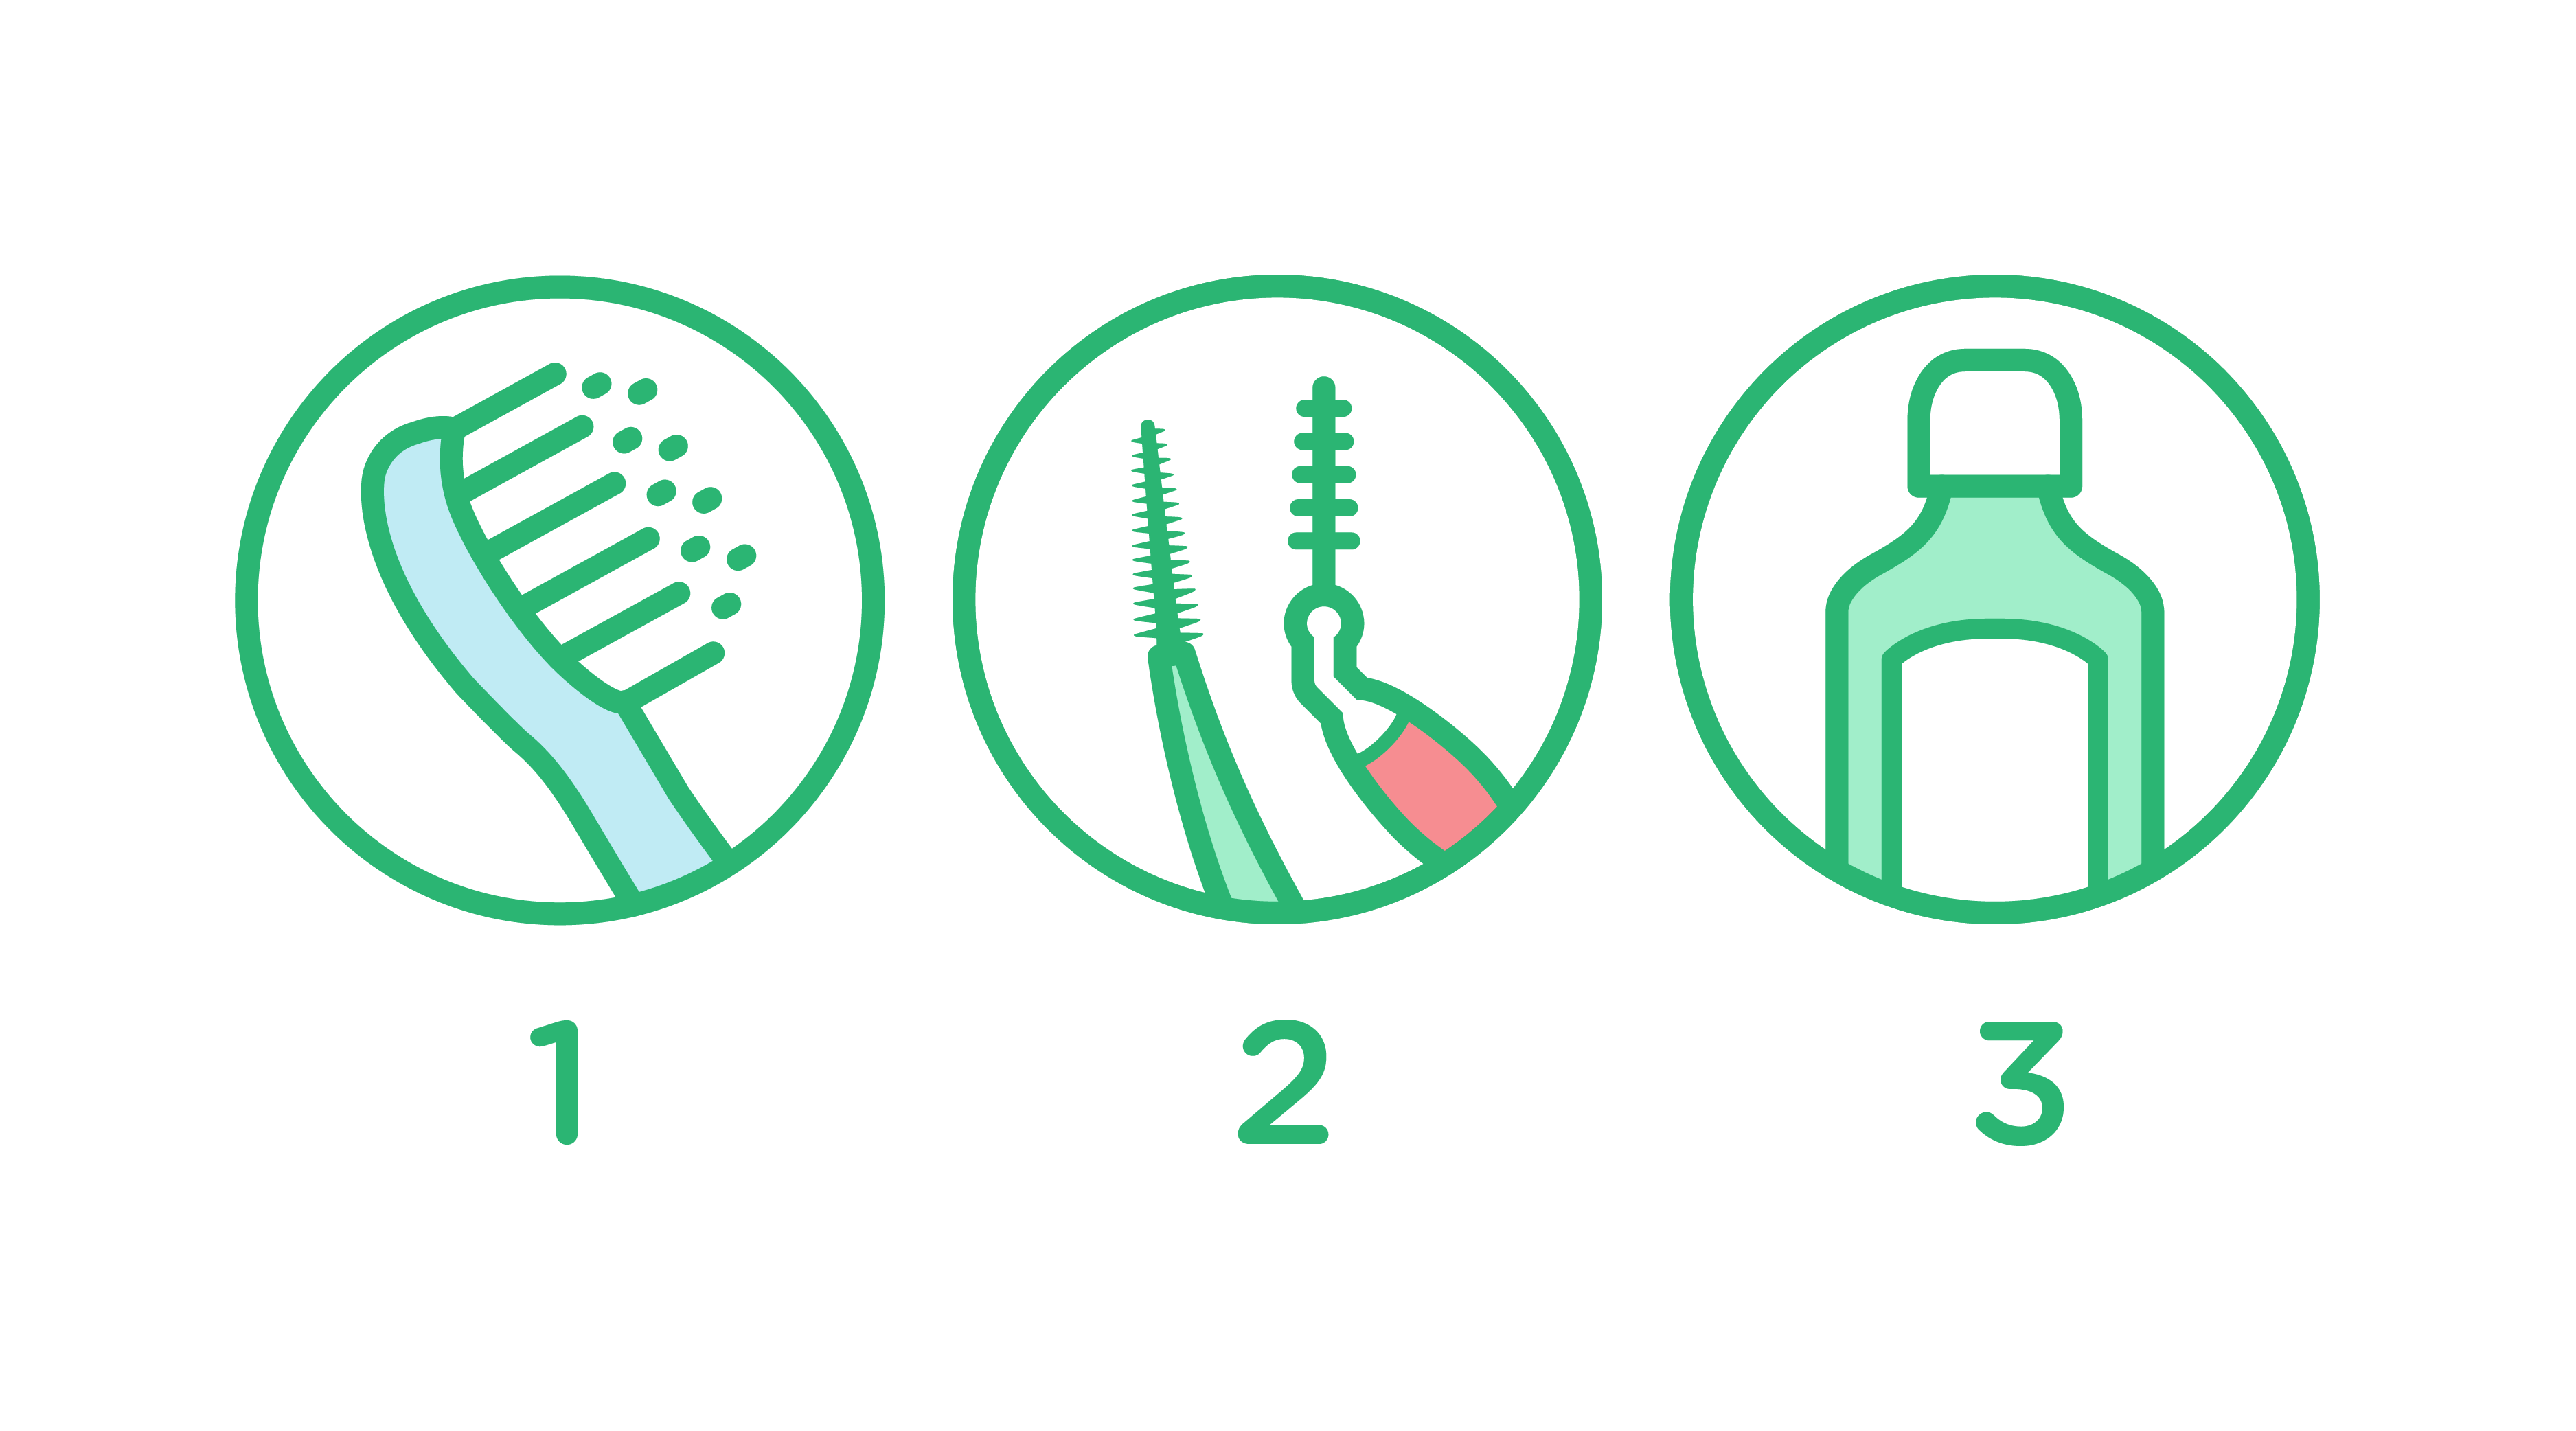 Drei Schritte für die optimale Mundgesundheit: Zähneputzen - Interdentalreinigen - Mundspülung verwenden